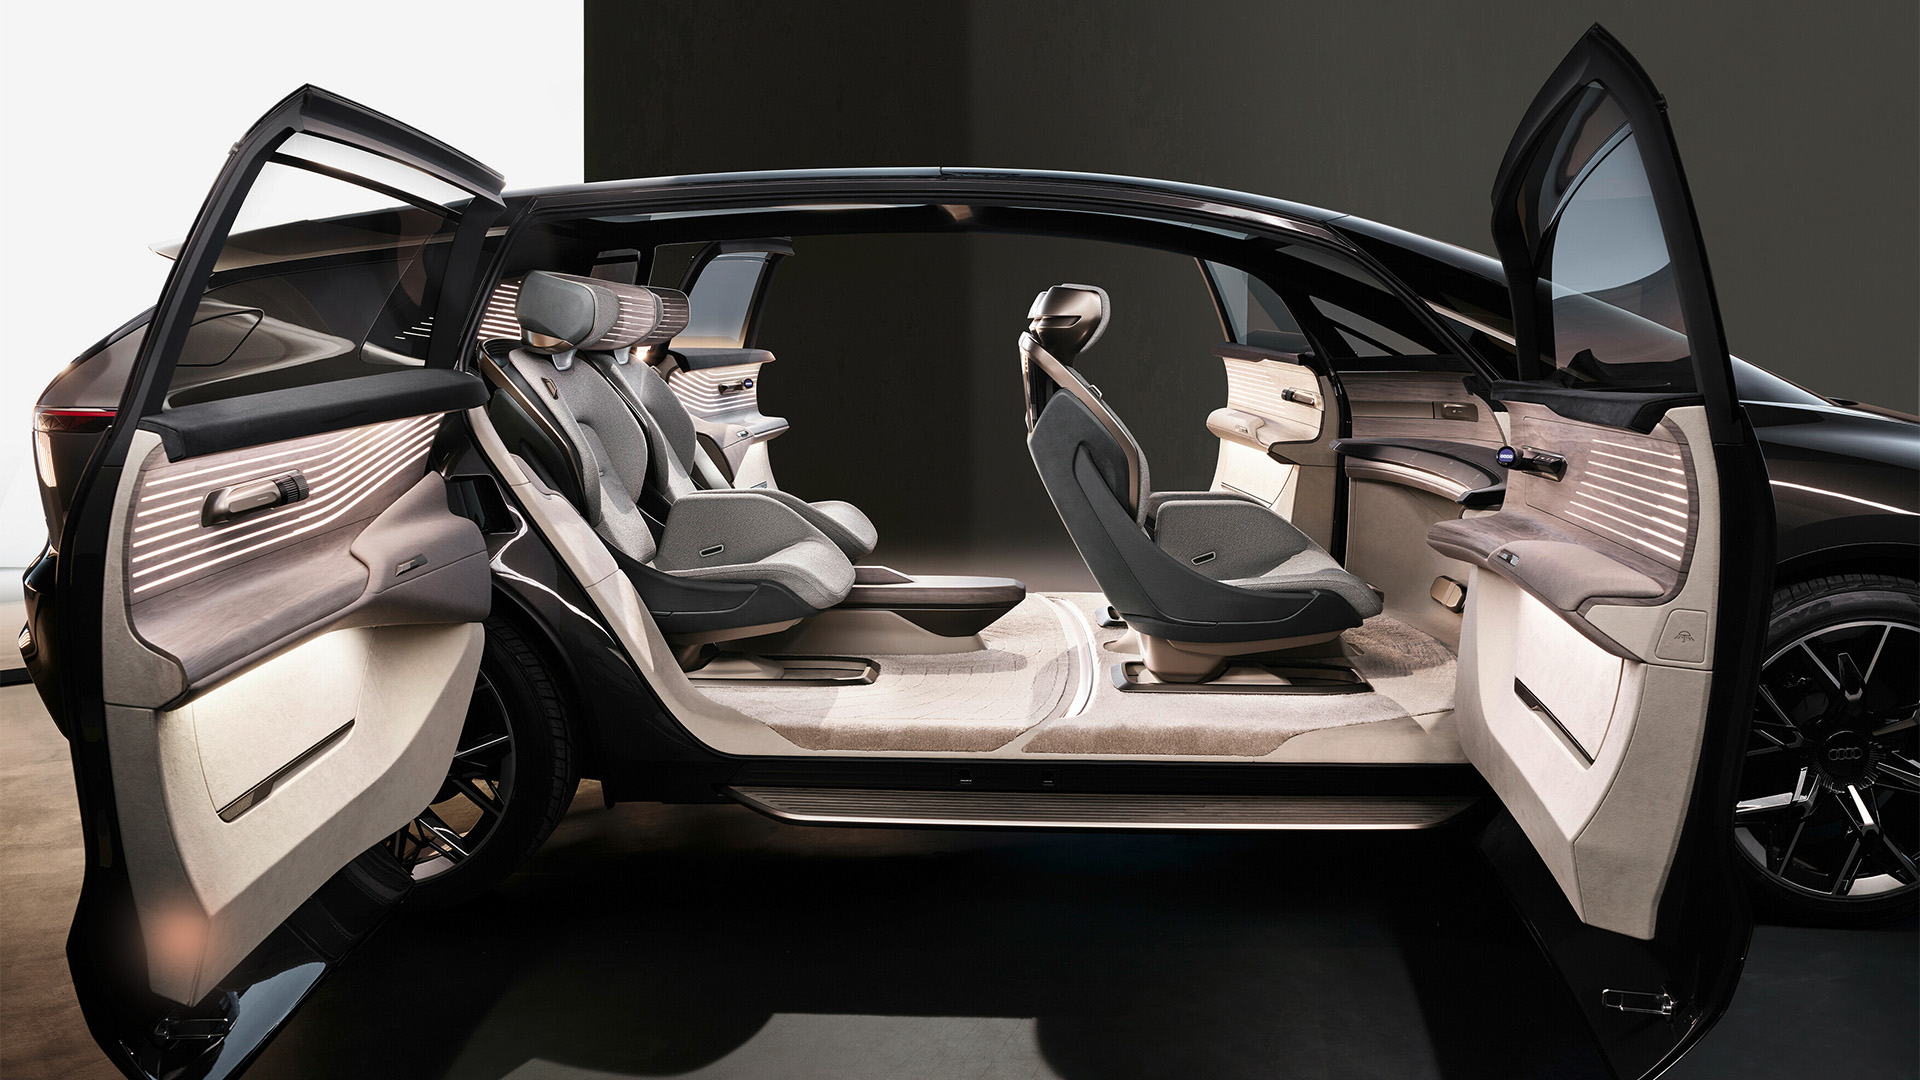 Blick in den Innenraum des Audi urbansphere concept{ft_showcar}.